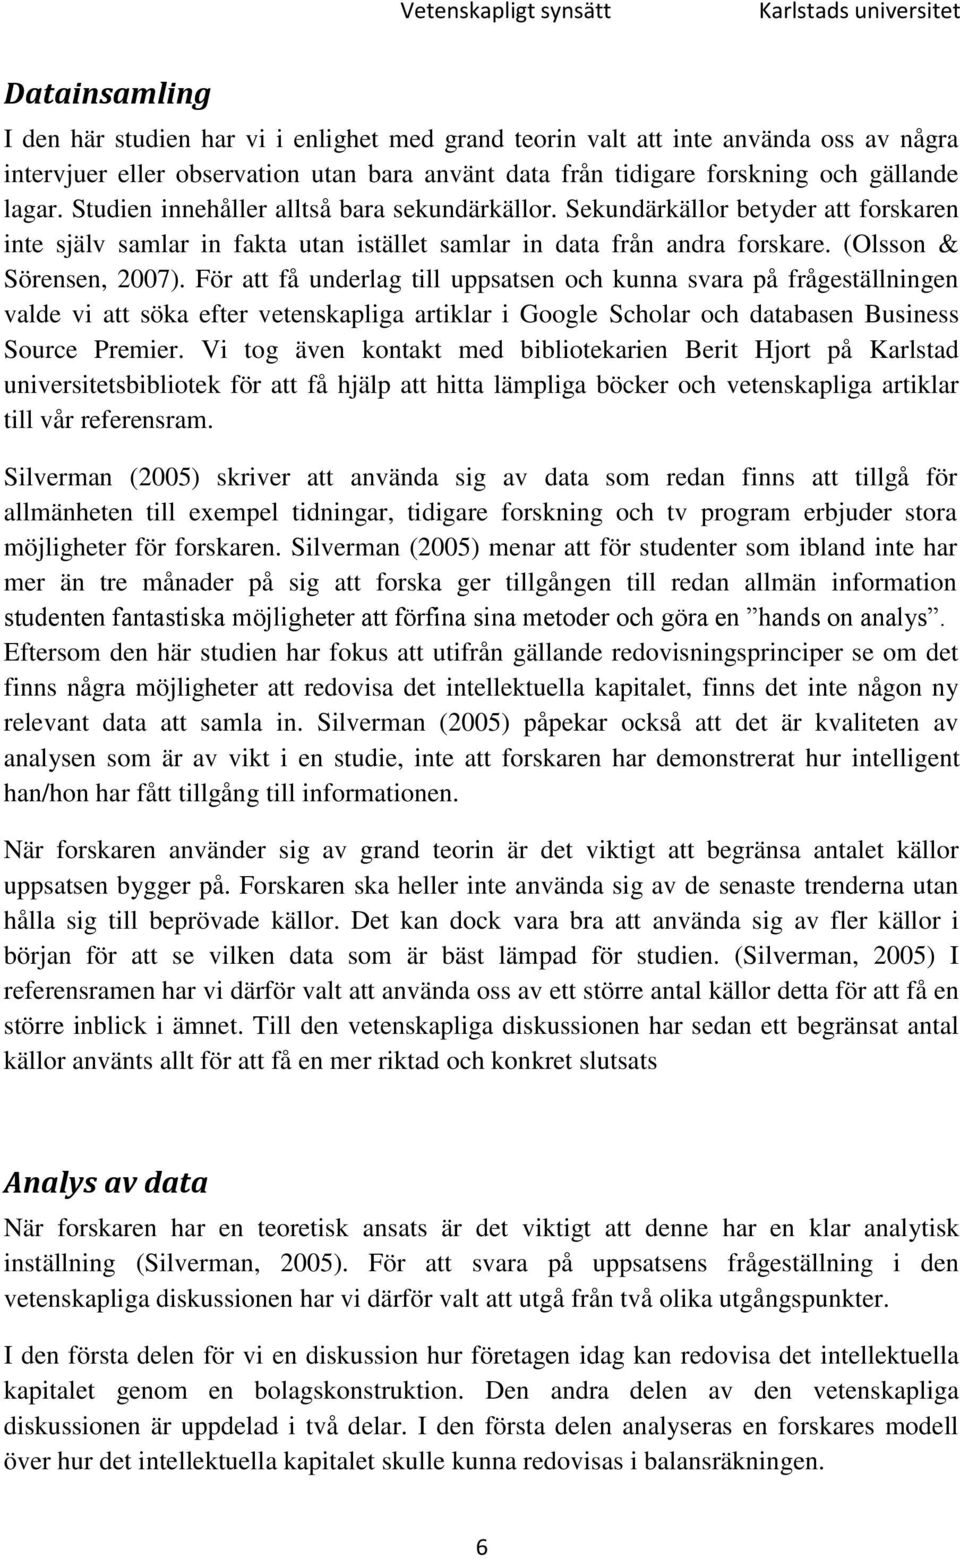 Sekundärkällor betyder att forskaren inte själv samlar in fakta utan istället samlar in data från andra forskare. (Olsson & Sörensen, 2007).